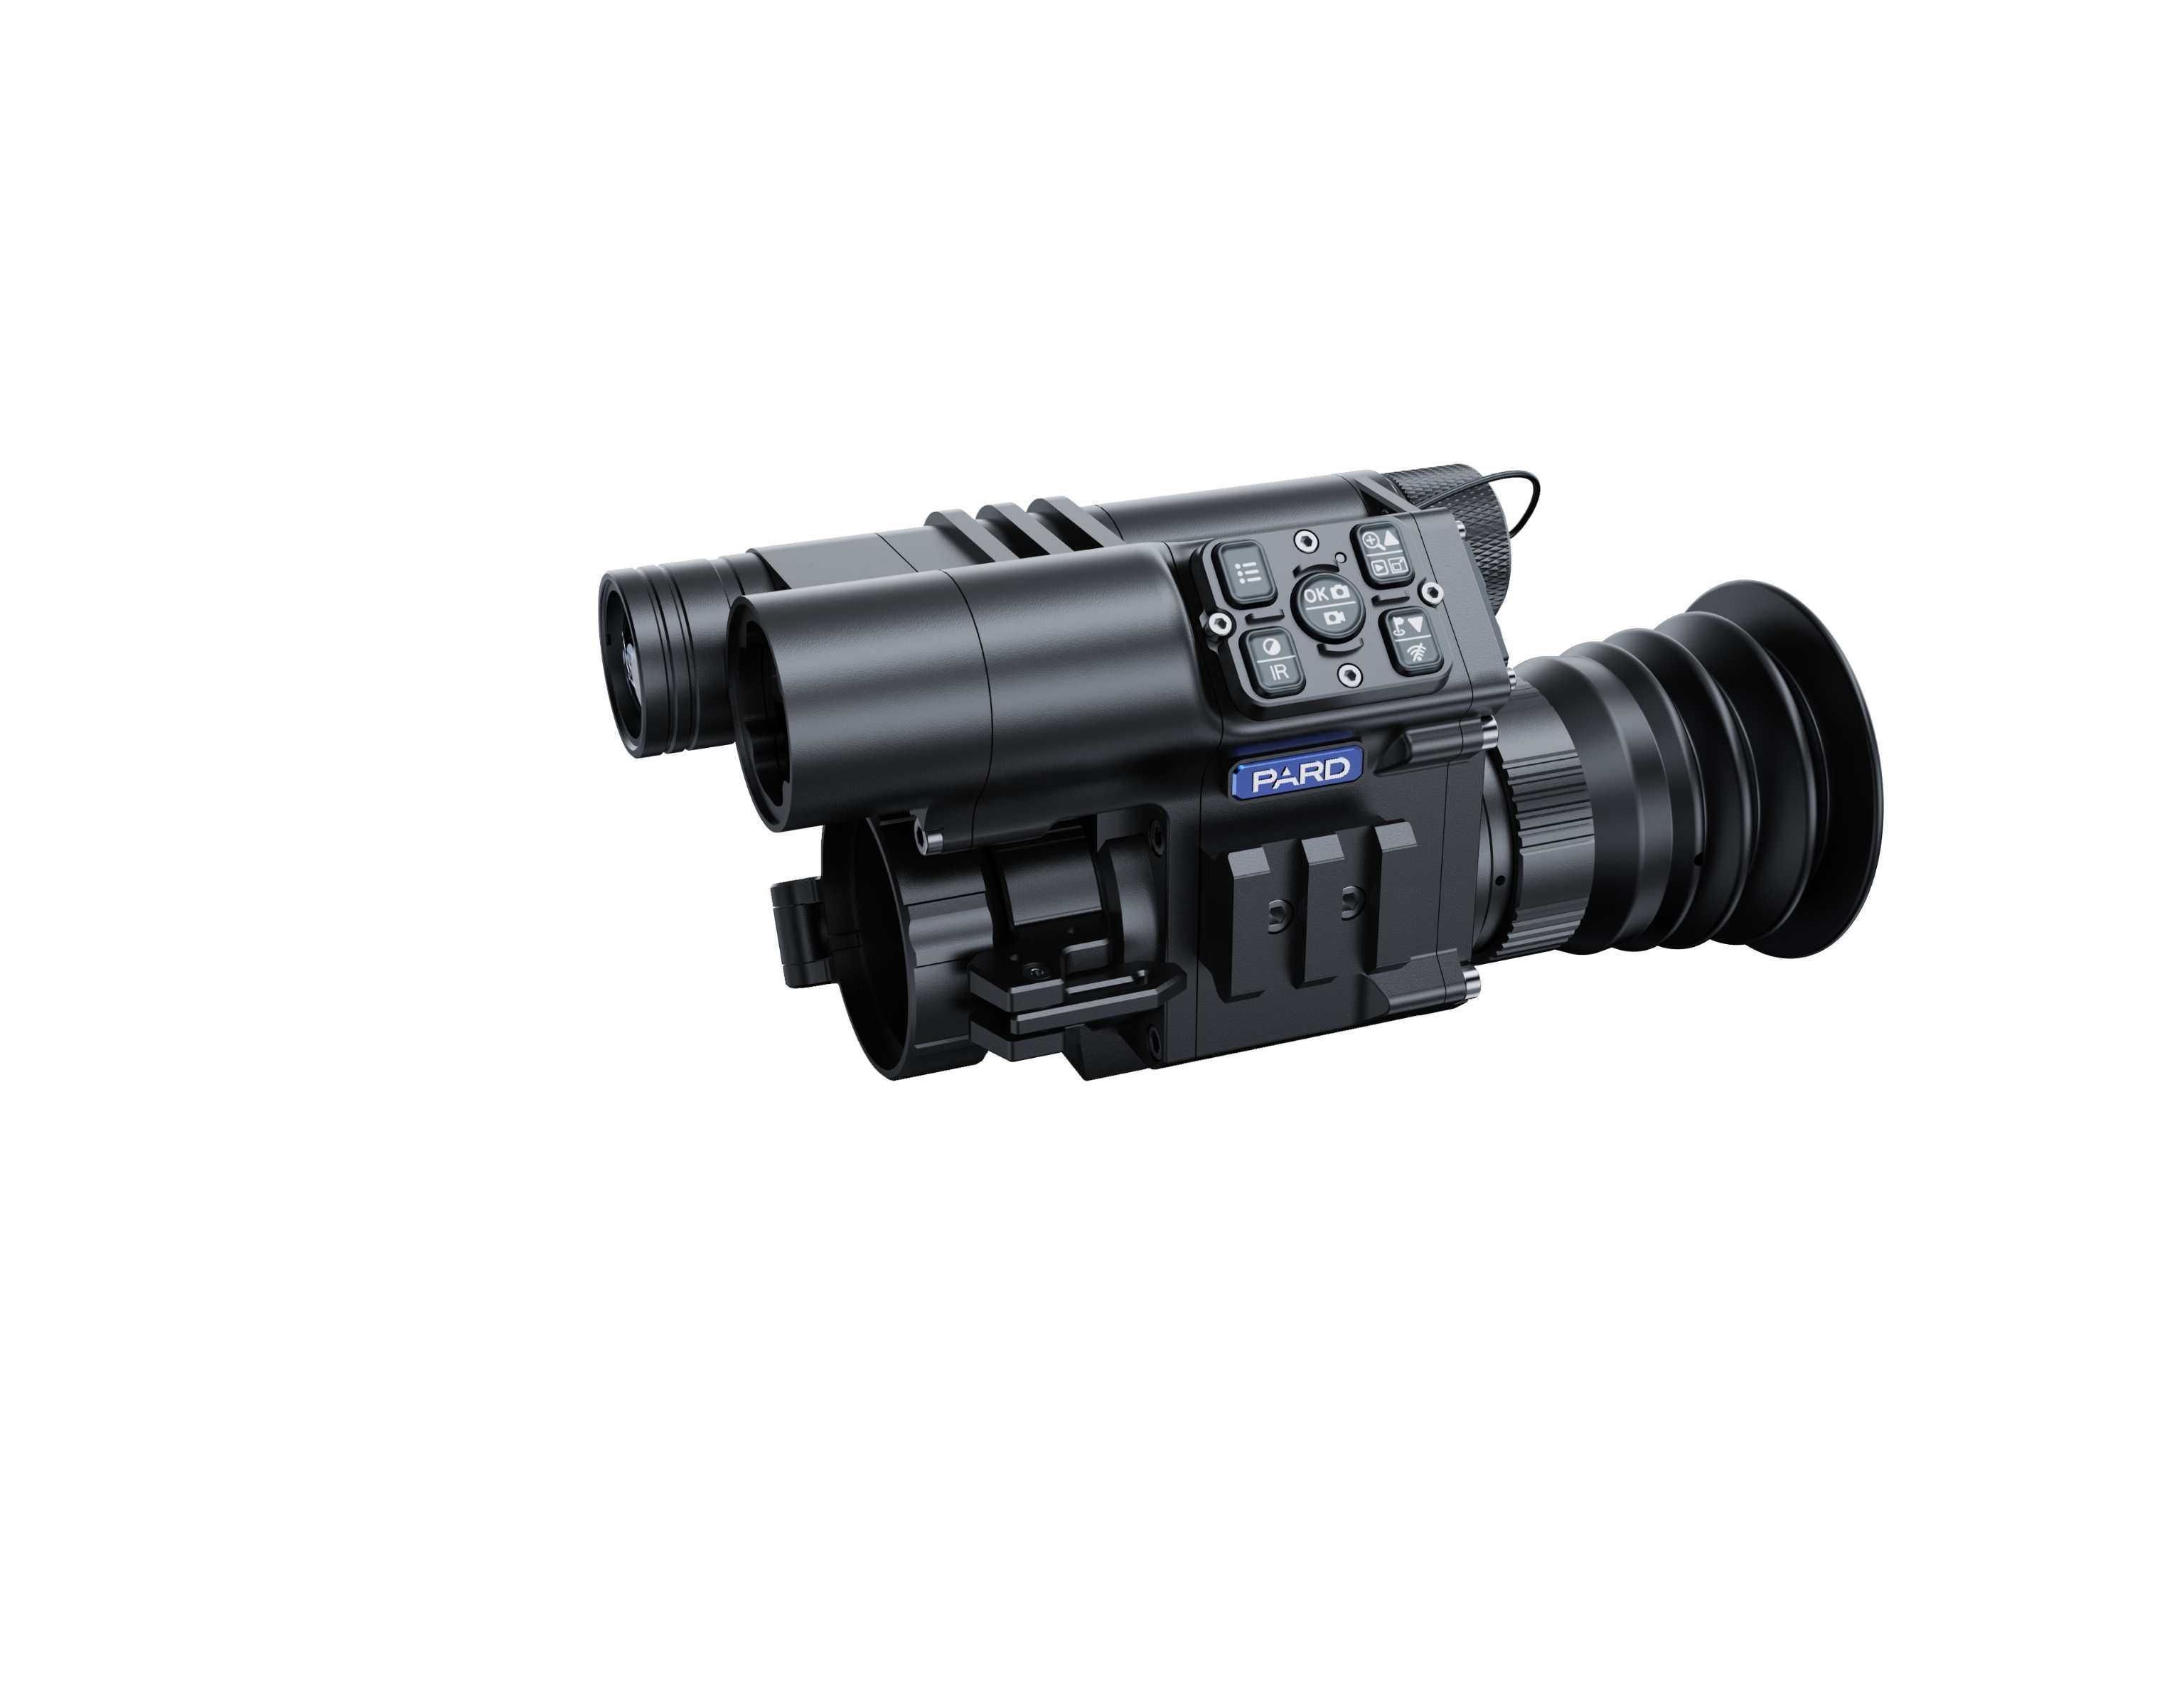 Pard  FD1 850 LRF  camera night vision